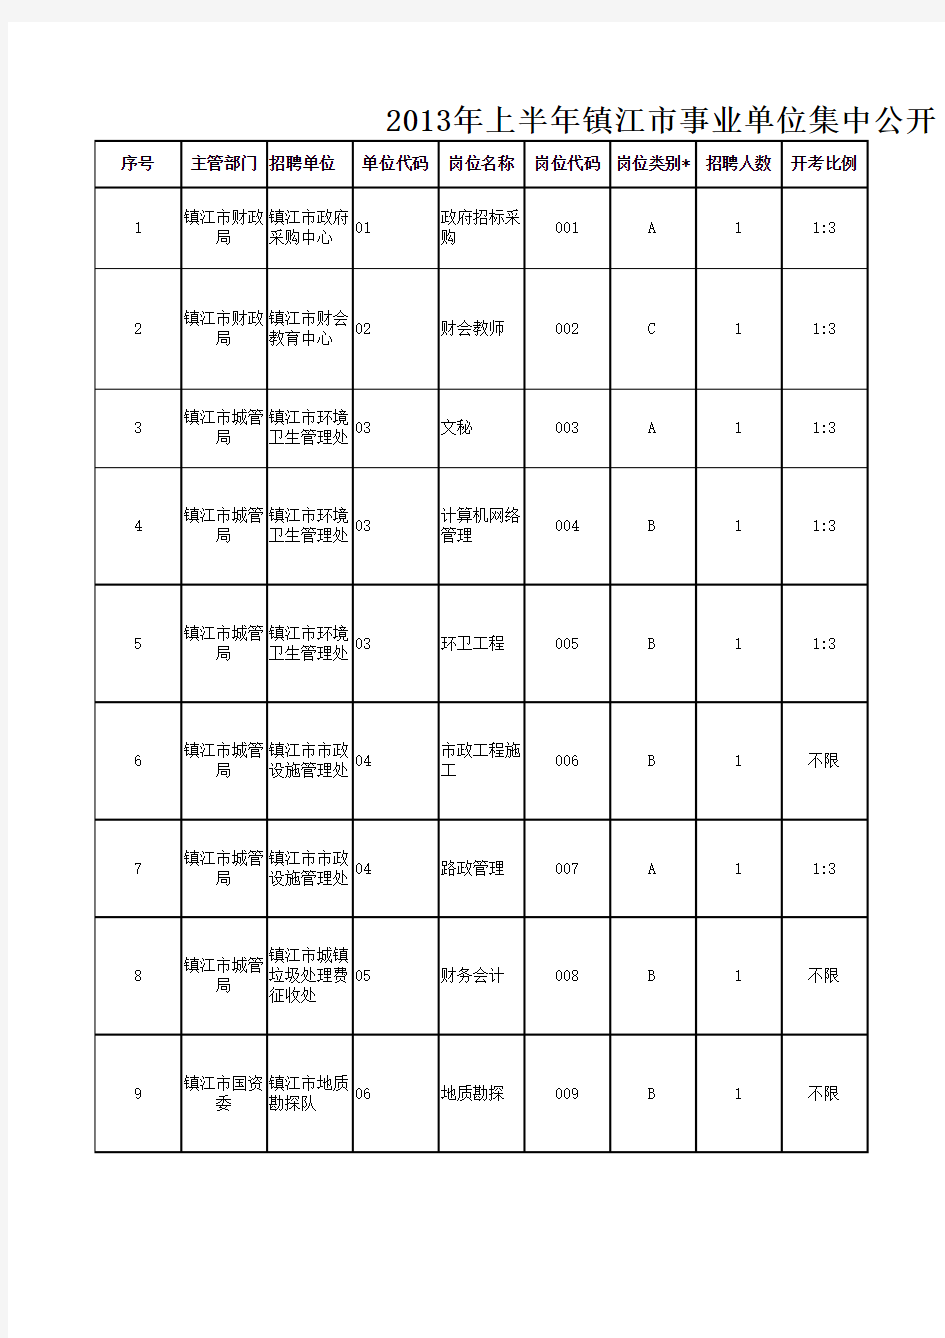 2013年上半年镇江市事业单位集中公开招聘岗位表